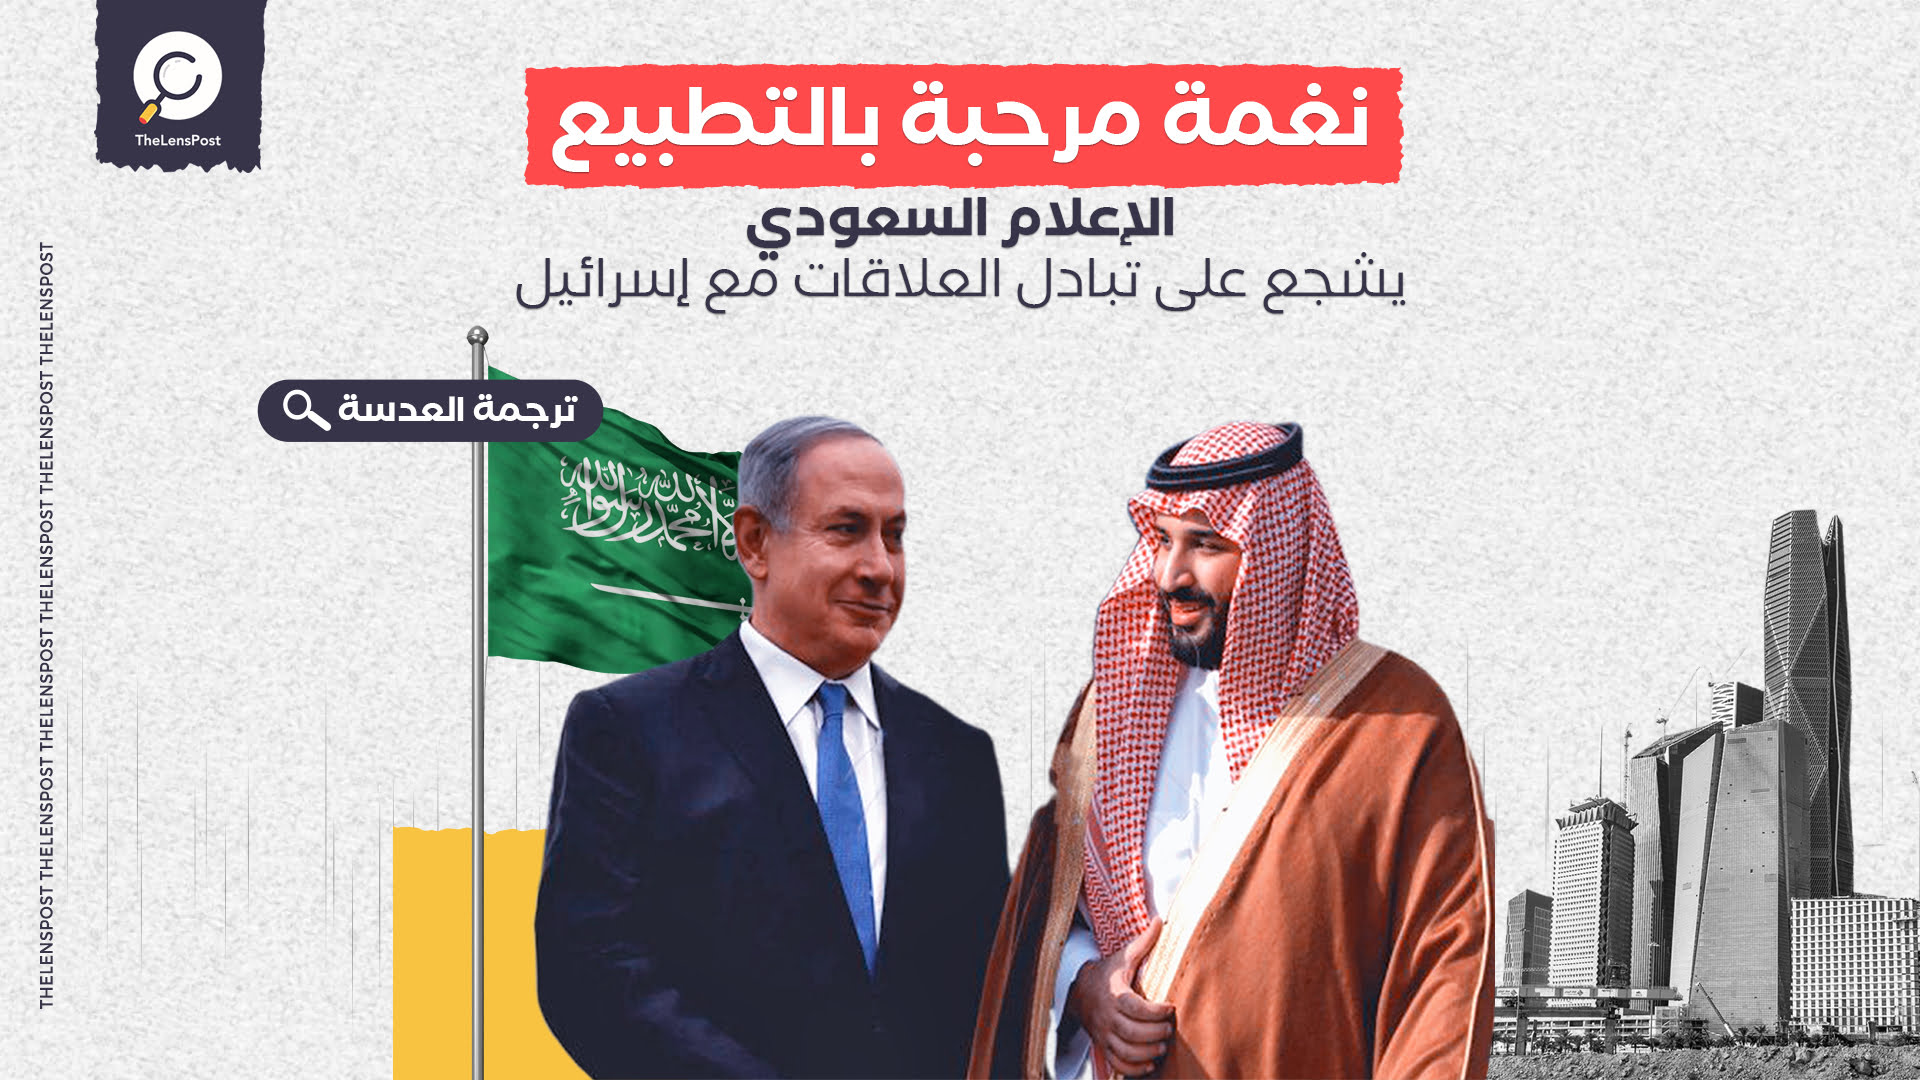 واشنطن بوست: نغمة مرحبة بالتطبيع.. الإعلام السعودي يشجع على تبادل العلاقات مع إسرائيل